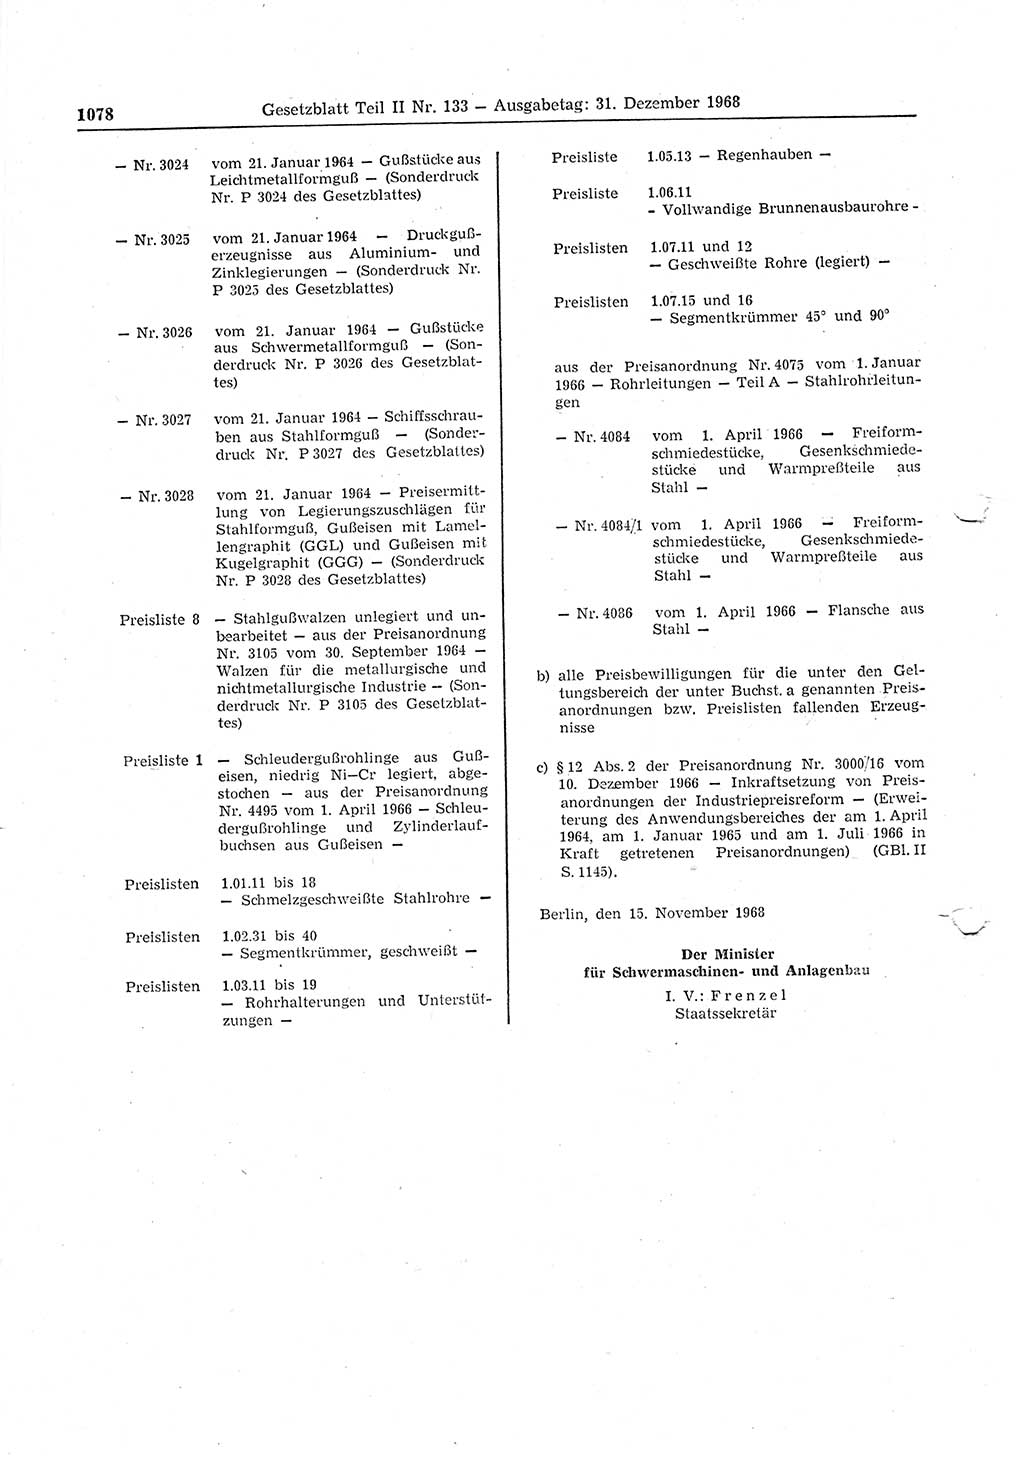 Gesetzblatt (GBl.) der Deutschen Demokratischen Republik (DDR) Teil ⅠⅠ 1968, Seite 1078 (GBl. DDR ⅠⅠ 1968, S. 1078)